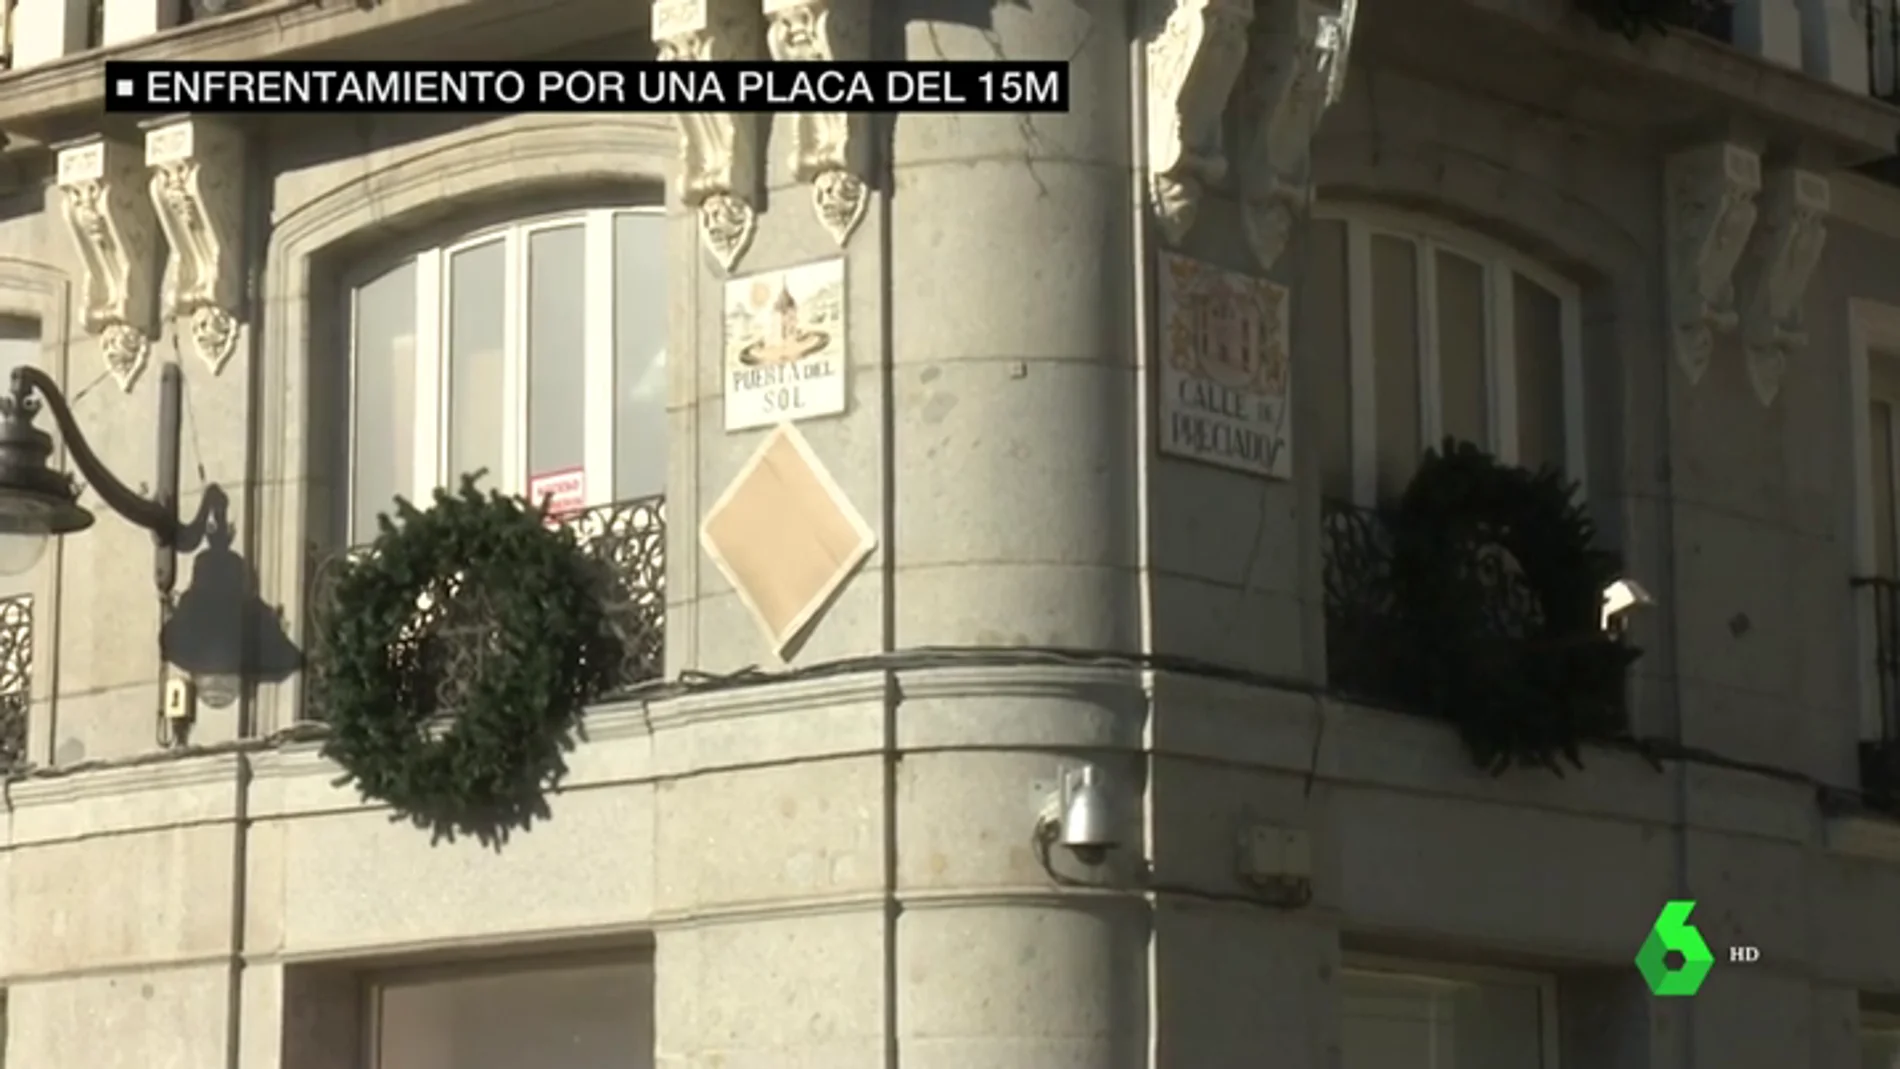 La Comunidad de Madrid le exige al Ayuntamiento que cumpla con la normativa y pida los permisos necesarios para colgar la placa en homenaje al 15M